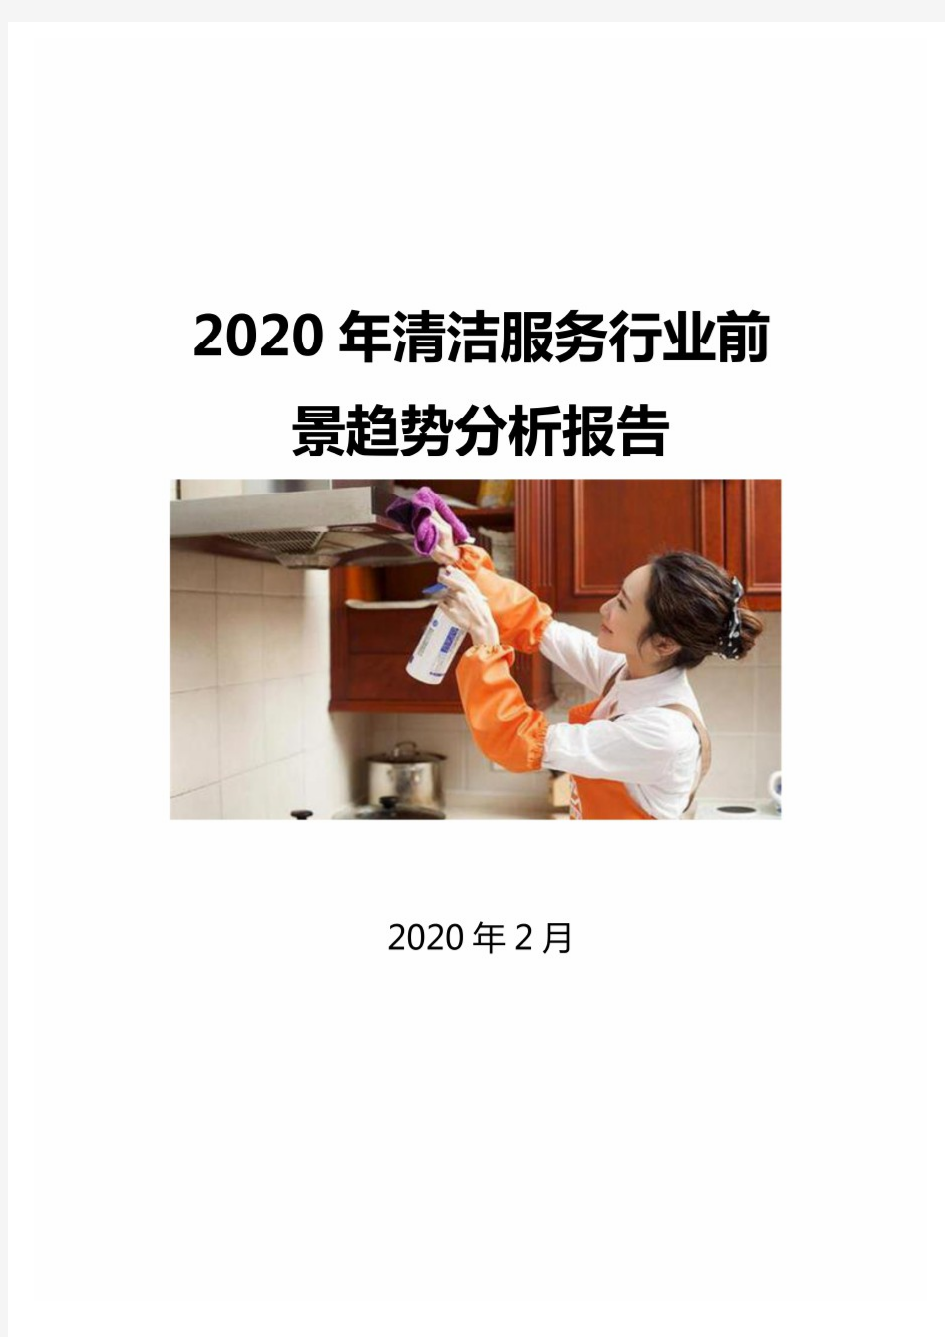 2020年清洁服务行业前景趋势分析报告